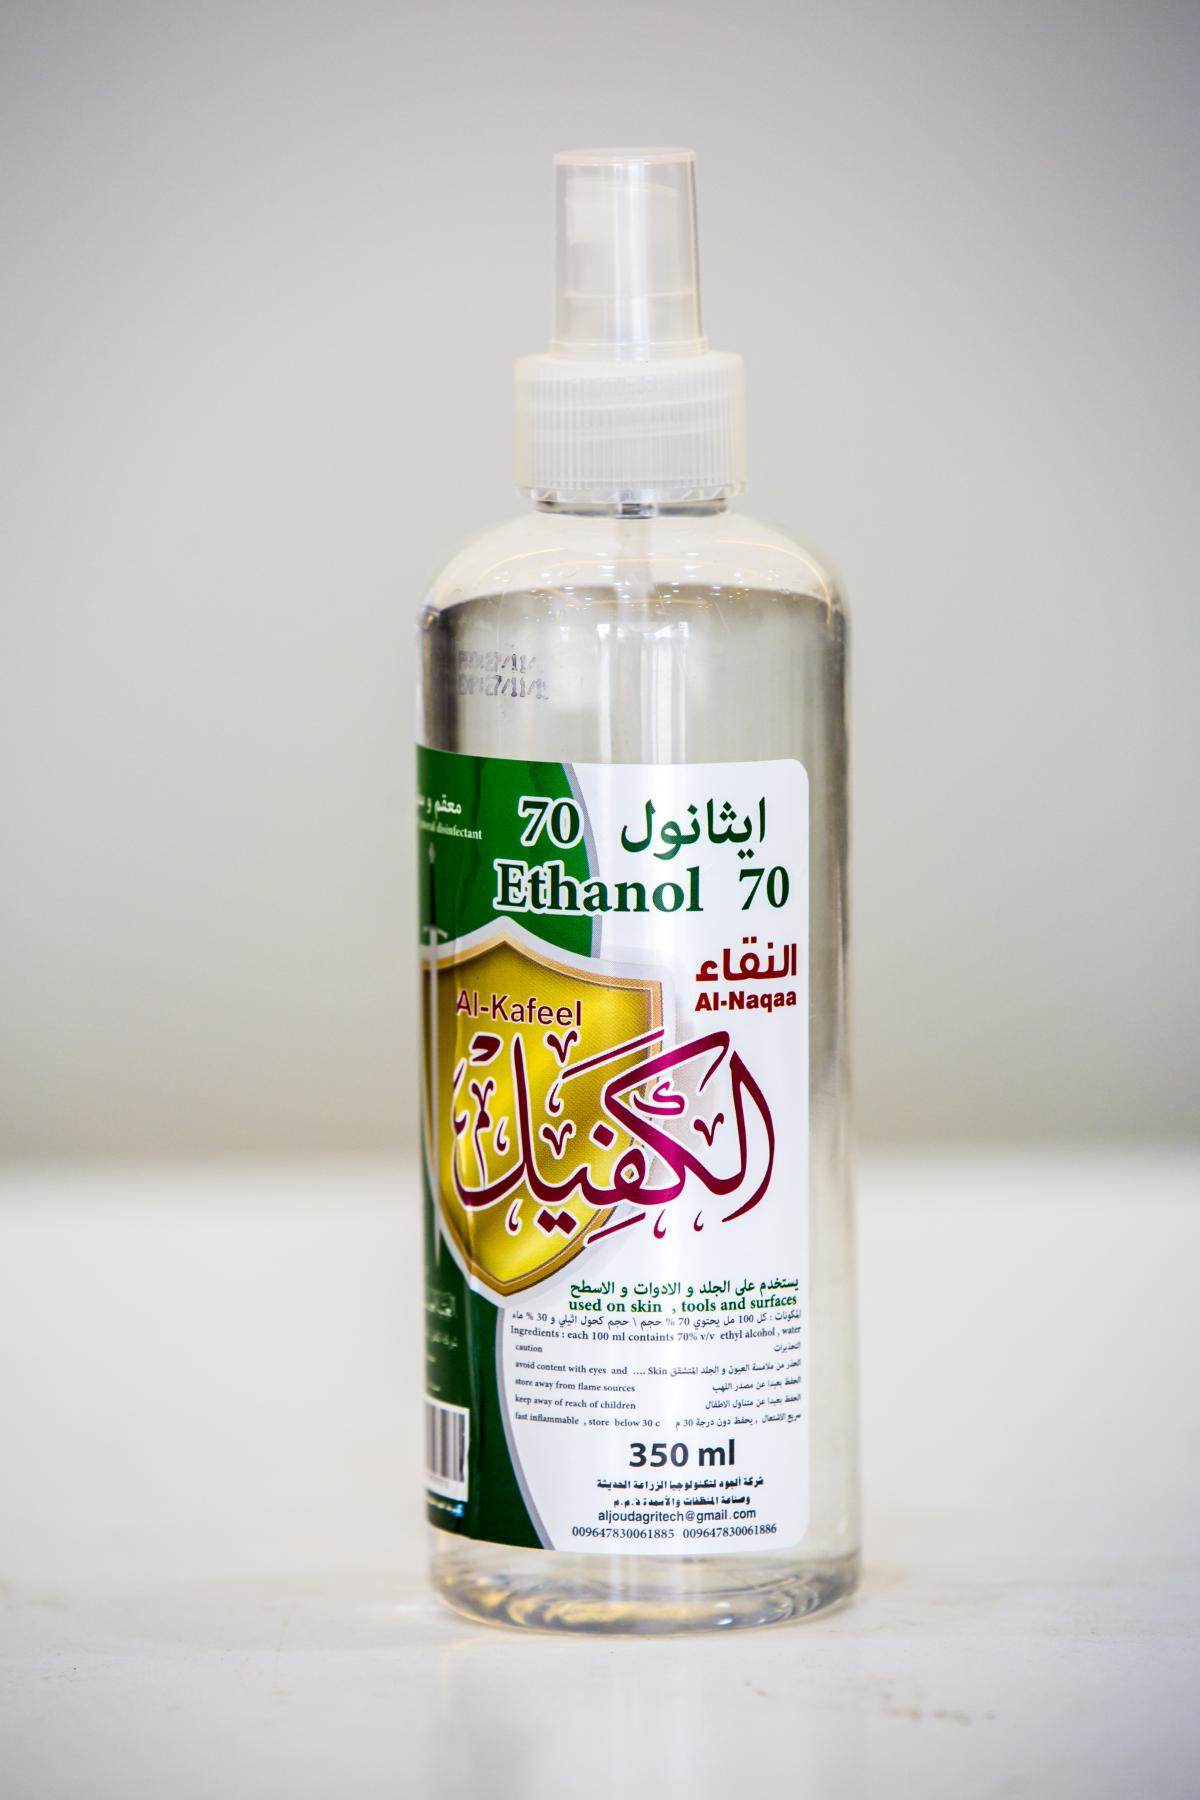 Medizinischer Alkohol vom Unternehmen Al-Joud, ein Produkt mit